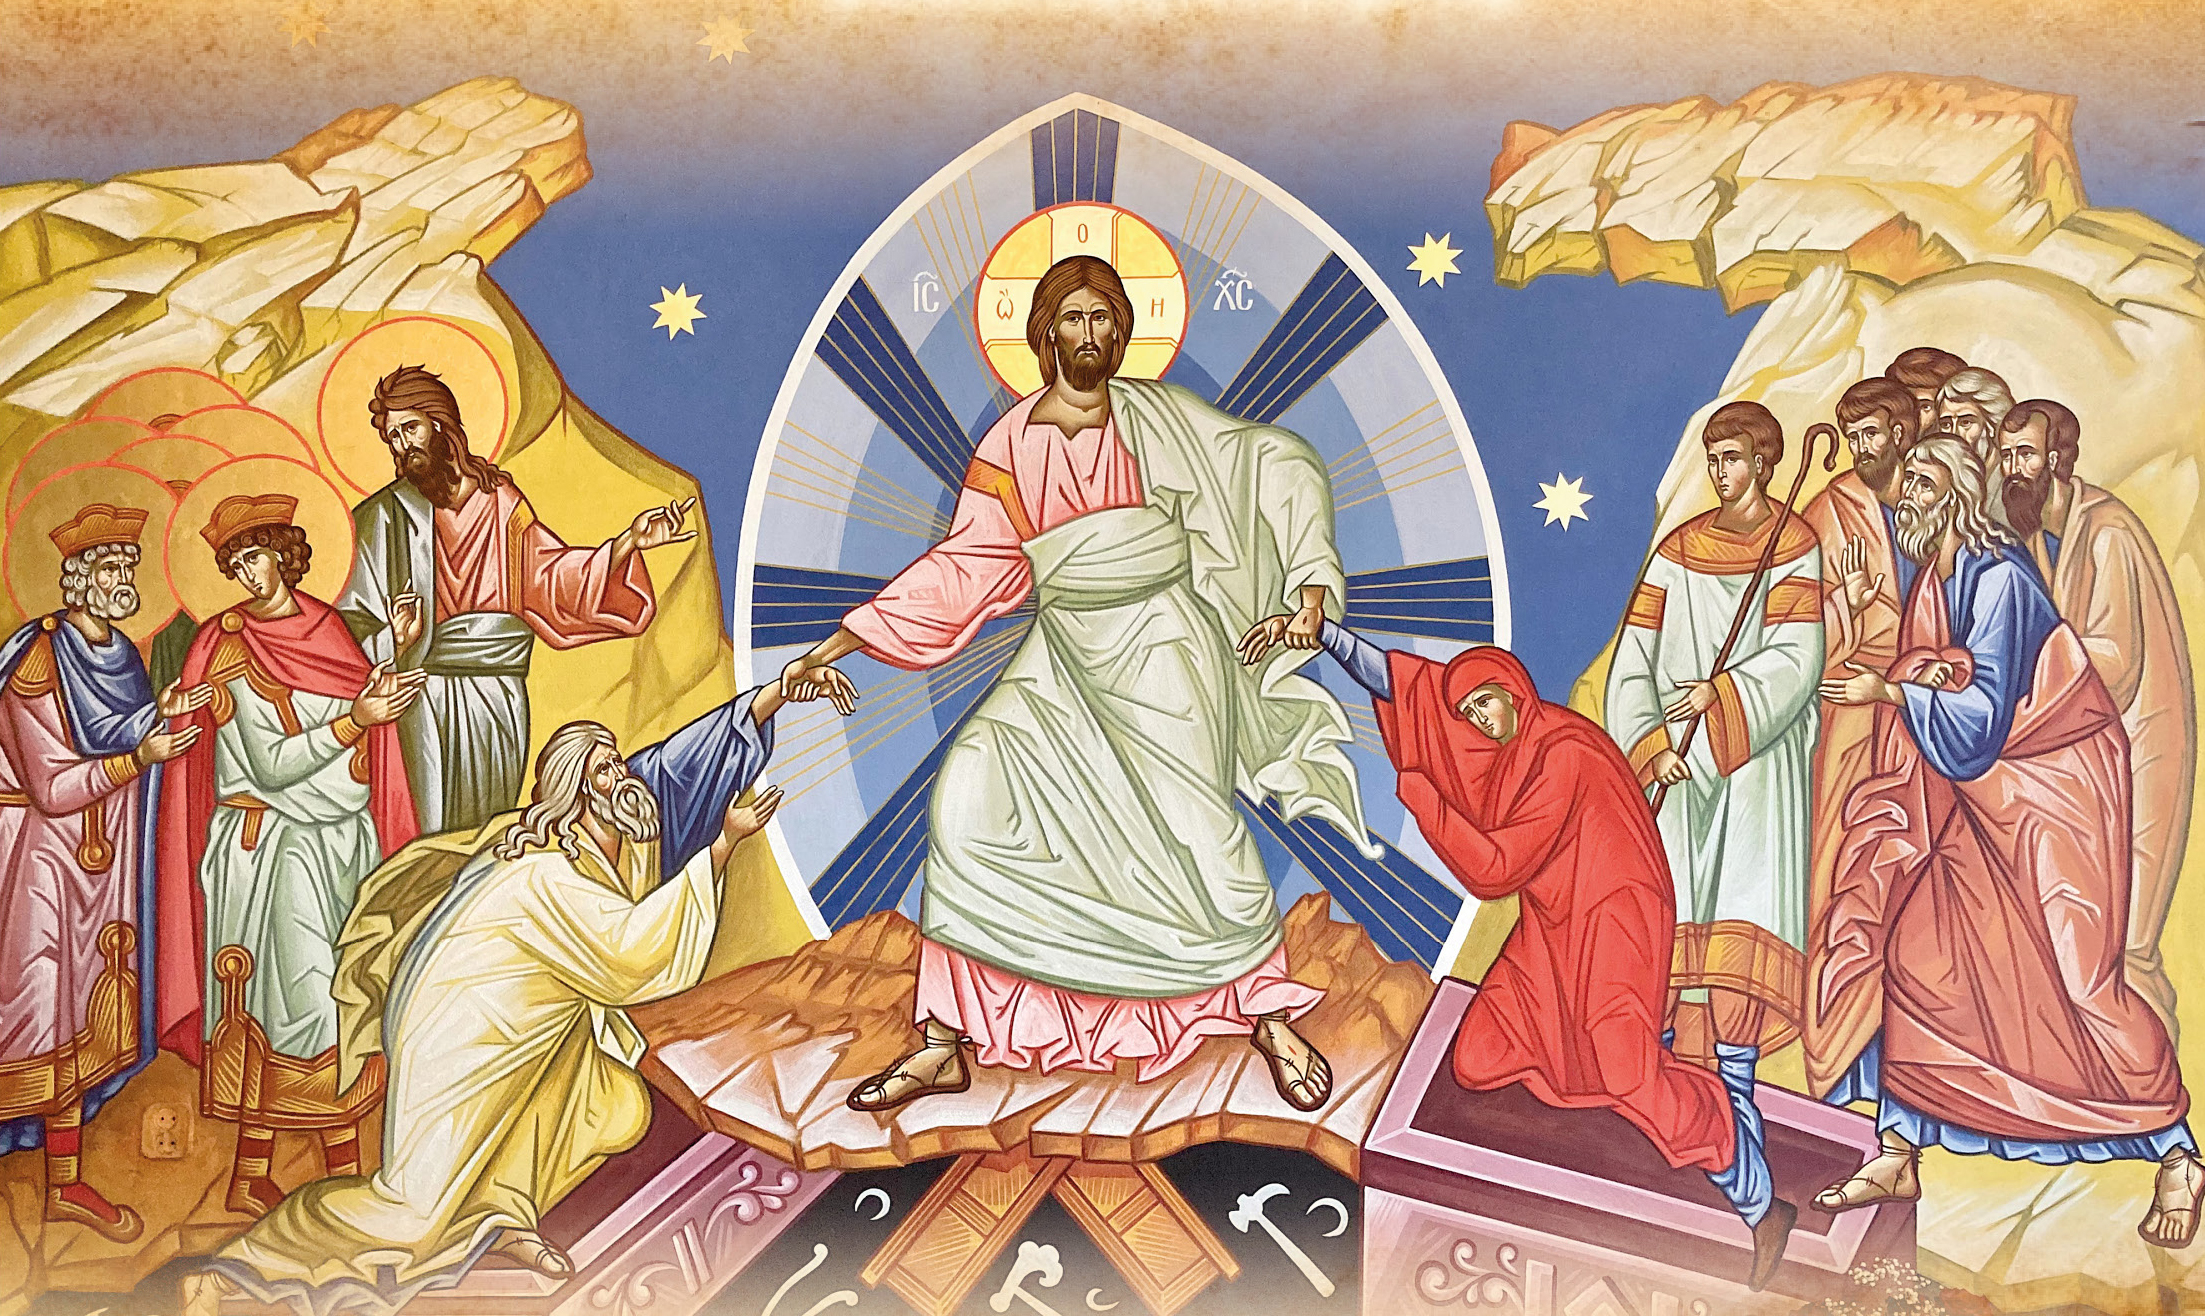 Dziś Pascha, czyli prawosławna Wielkanoc